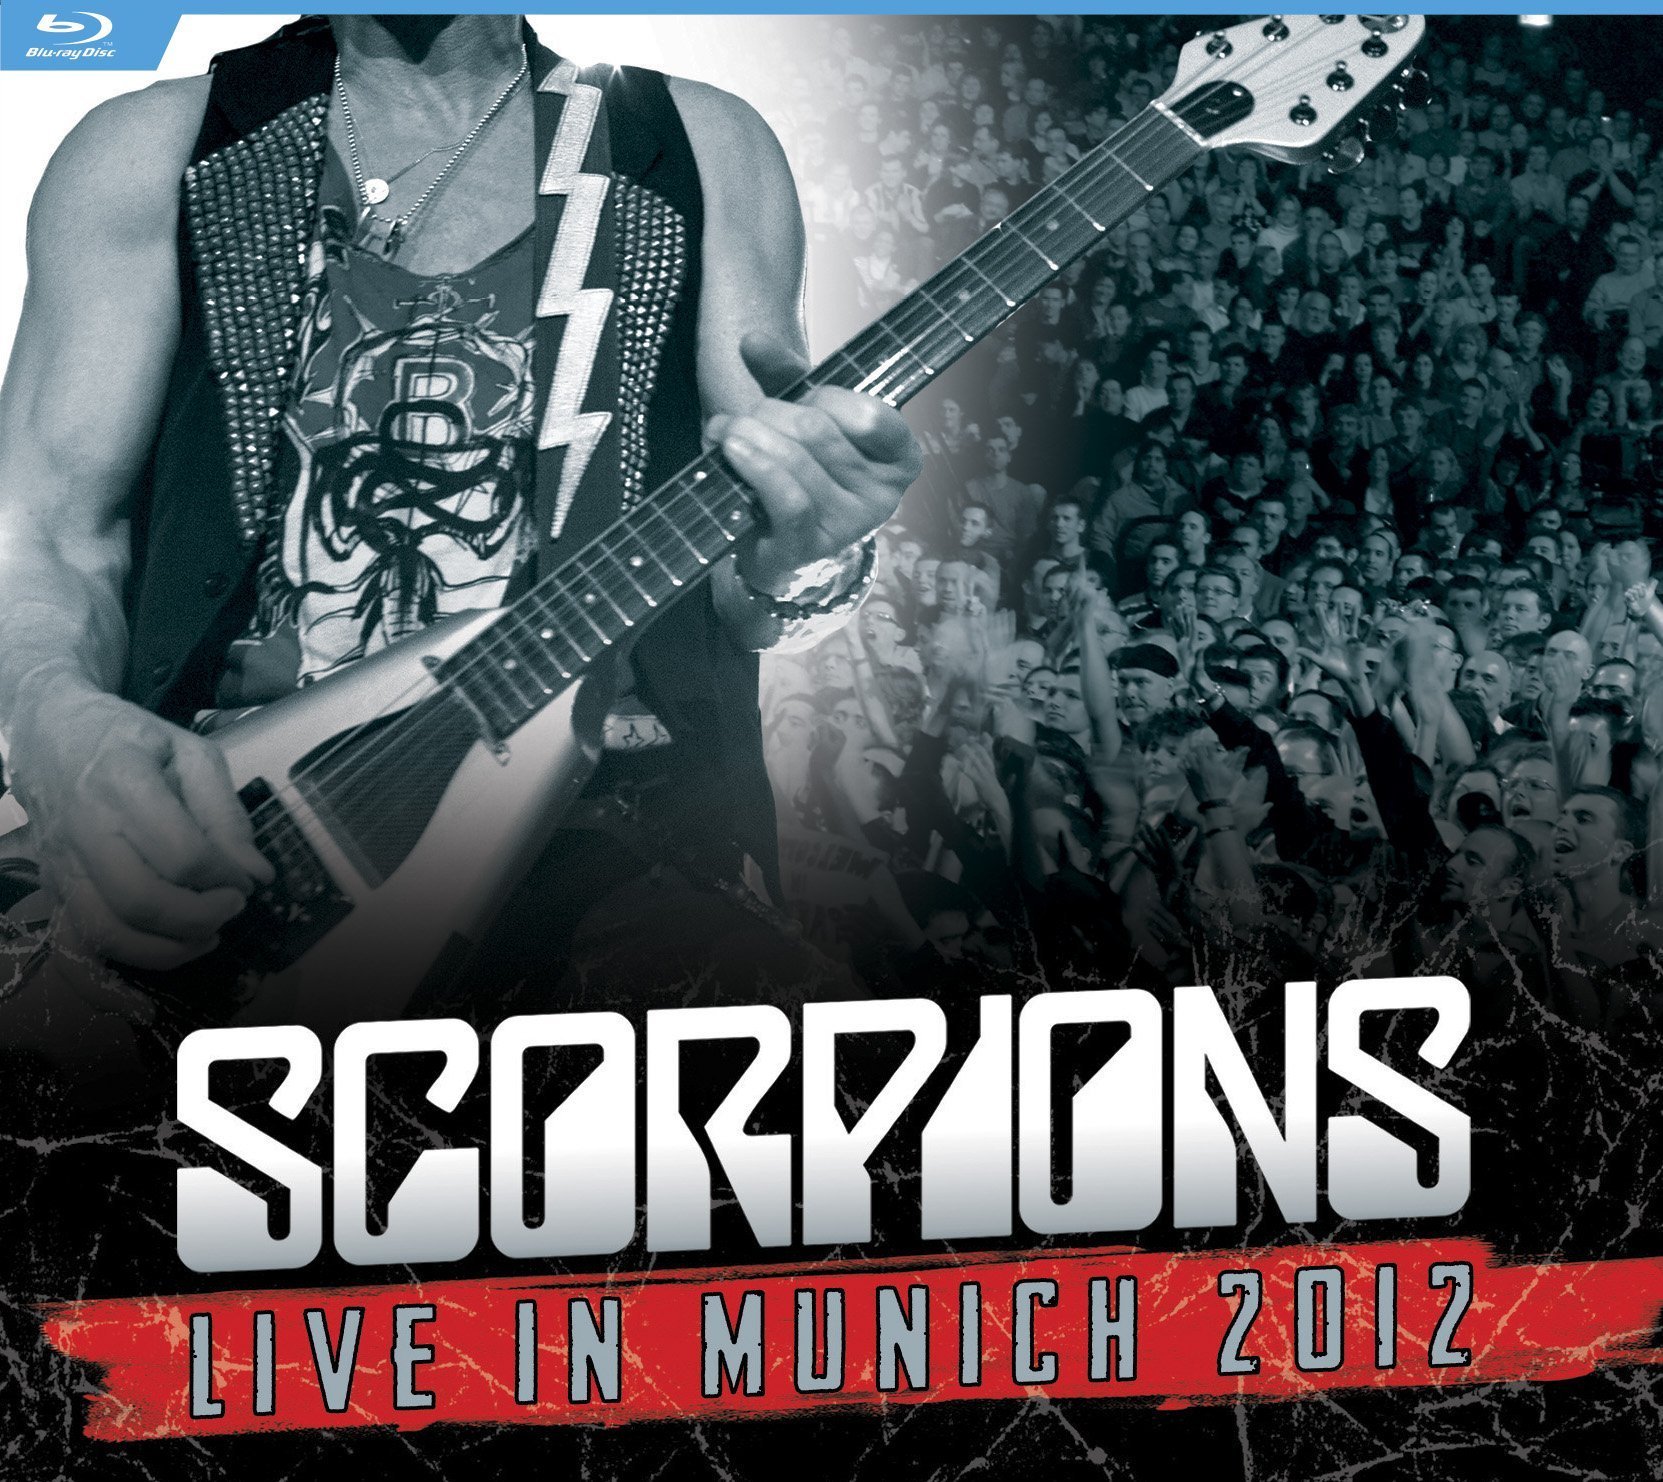 Scorpions: Live in Munich 2012 Blu-ray (DigiPack)